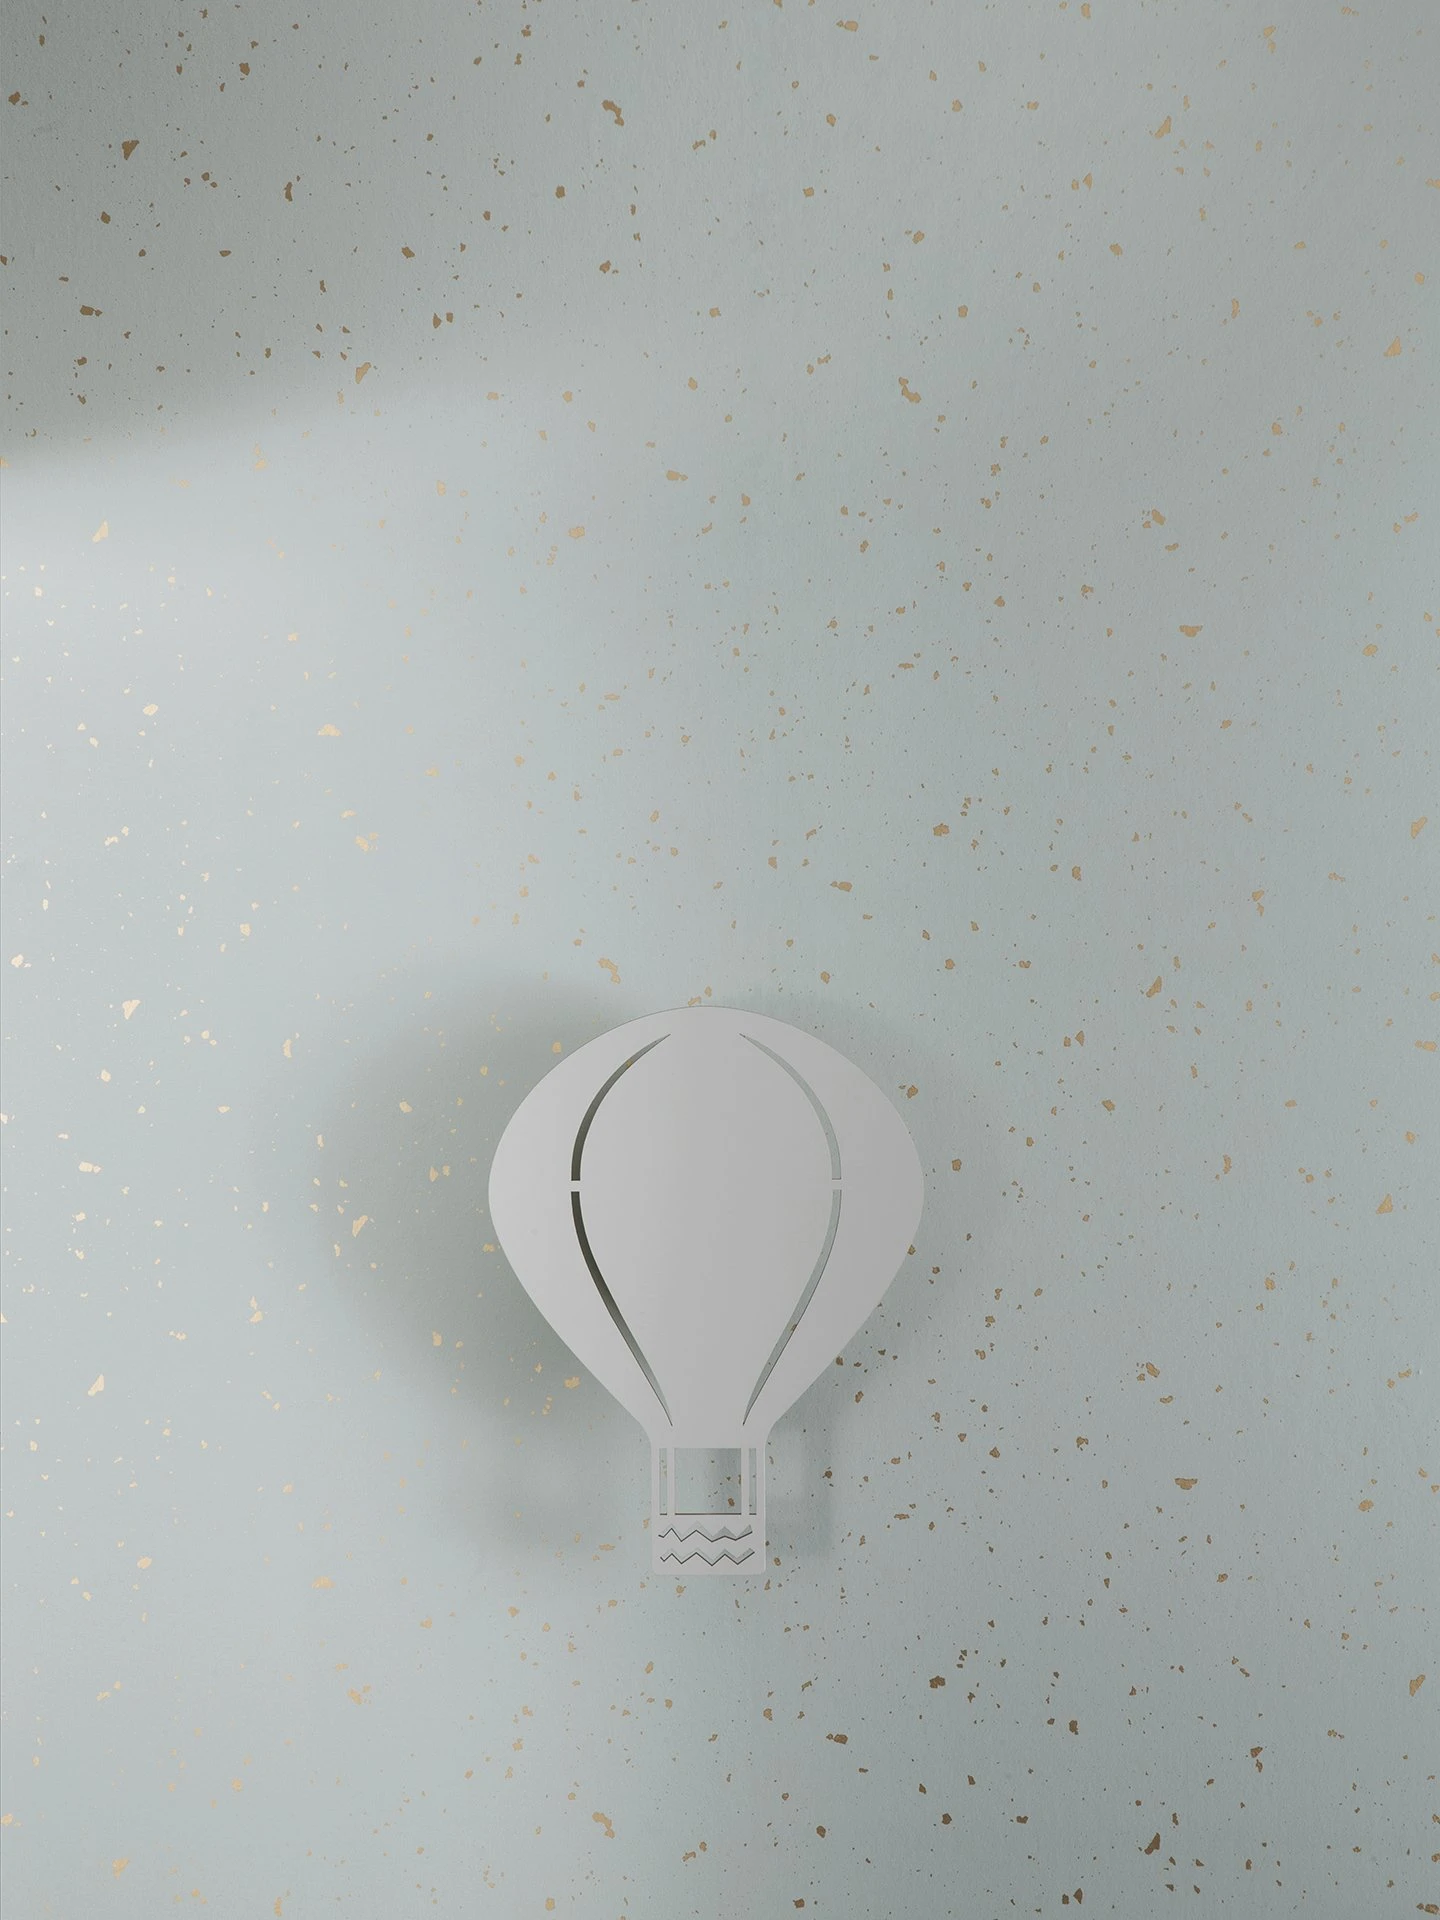 Tapete Confetti in Minz präsentiert im Onlineshop von KAQTU Design AG. Tapete ist von Ferm Living